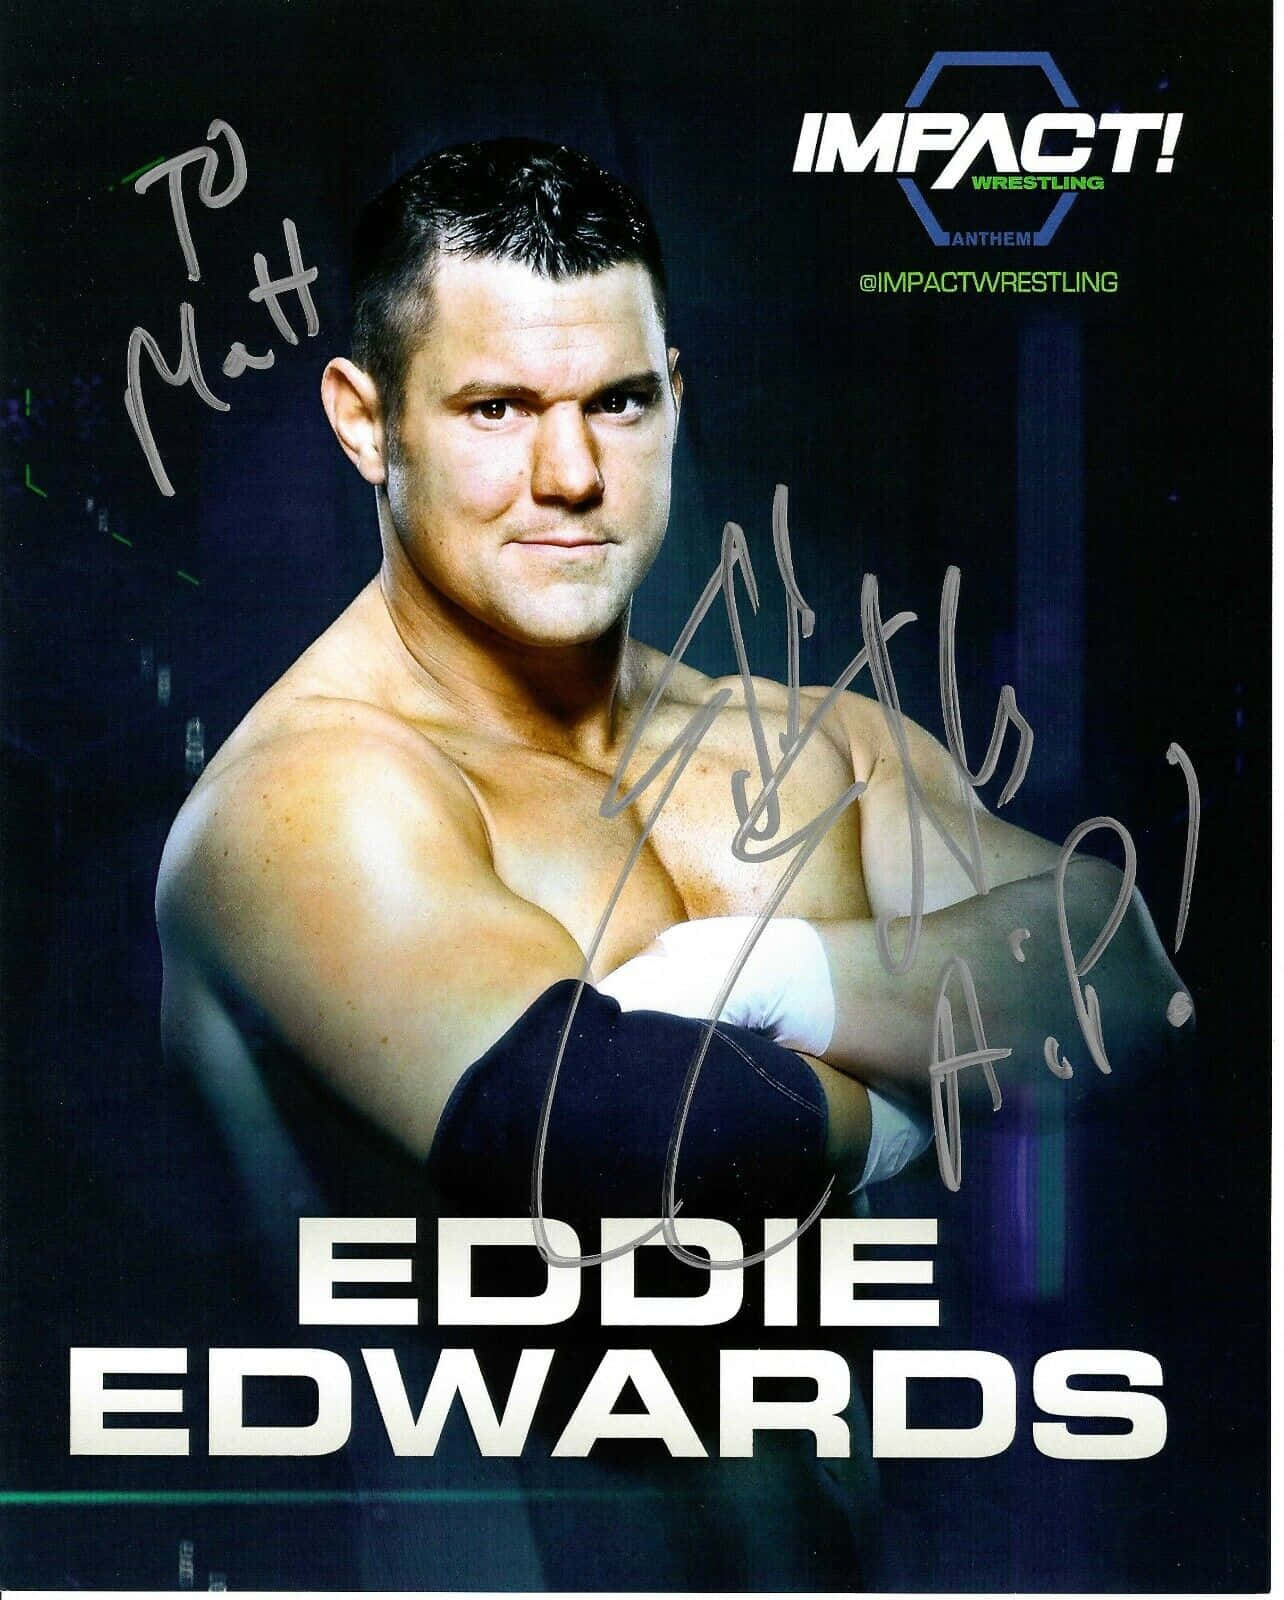 Eddie Edwards 1284 X 1600 Wallpaper